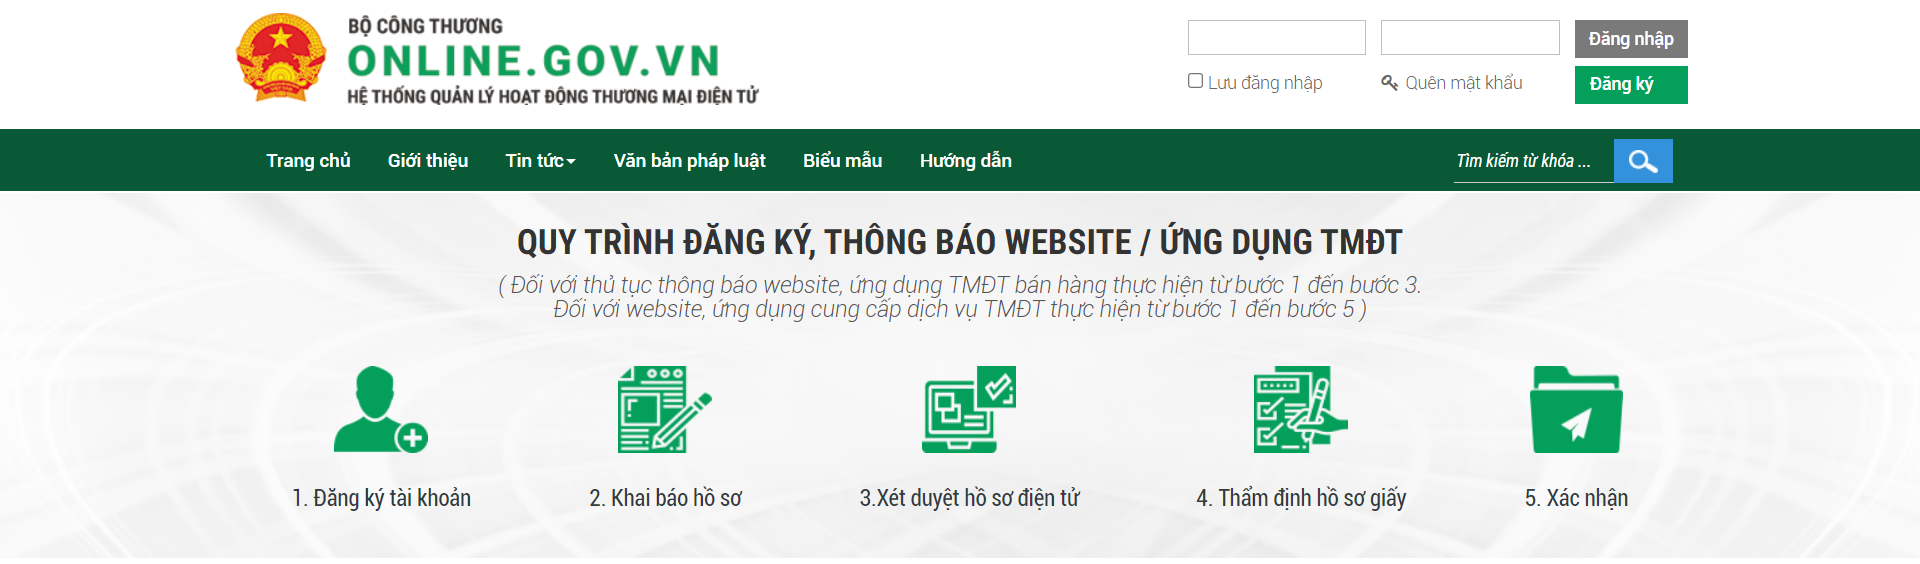 Hướng dẫn đăng ký website với Bộ Công thương - Hồ sơ thông báo website thương mại điện tử bán hàng - Ảnh: 1